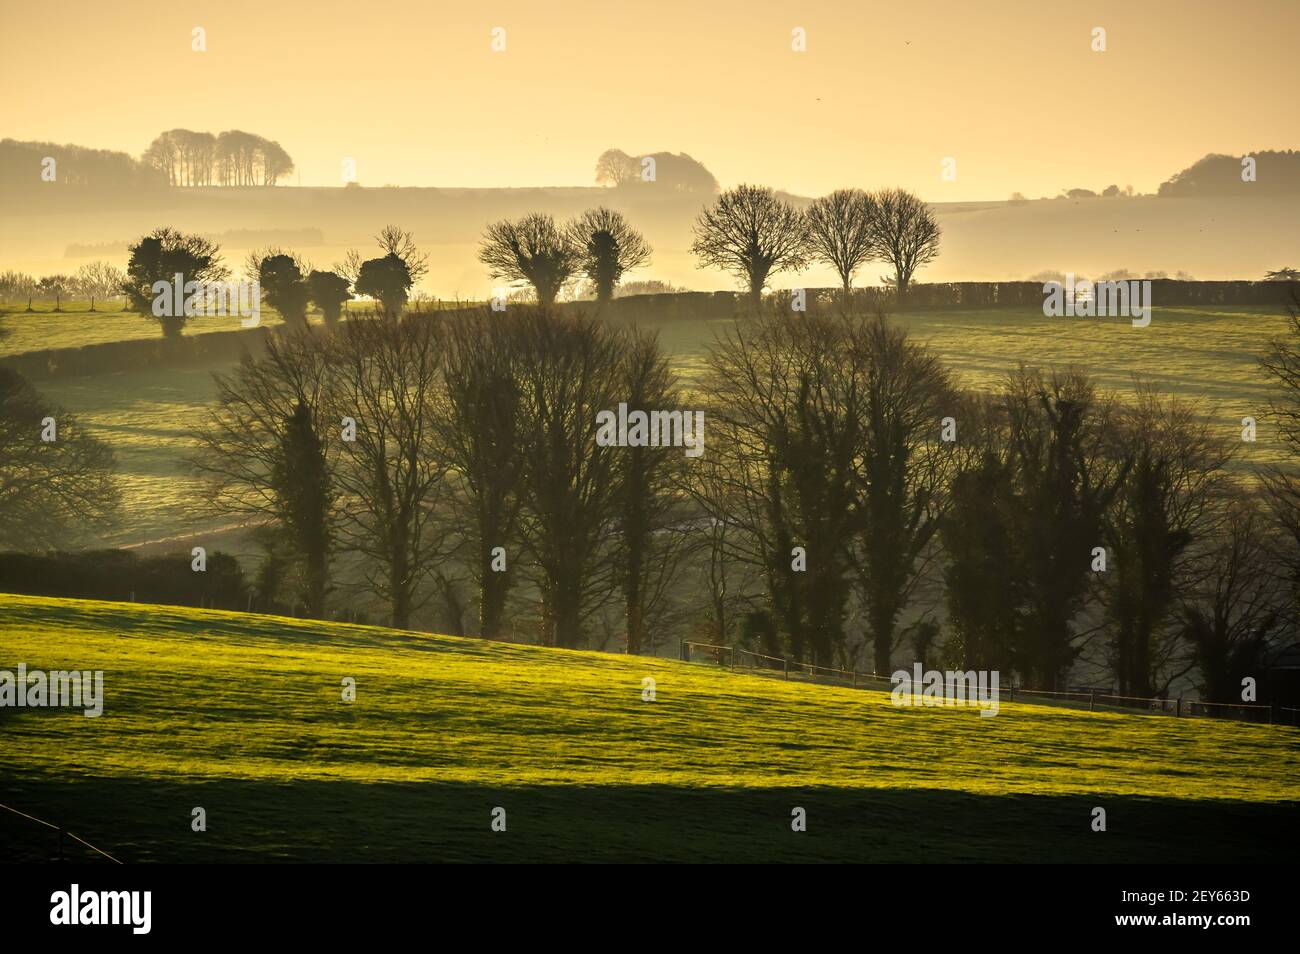 La lumière du matin dorée illumine les collines près de Kings worthy, Hampshire, Angleterre. Banque D'Images